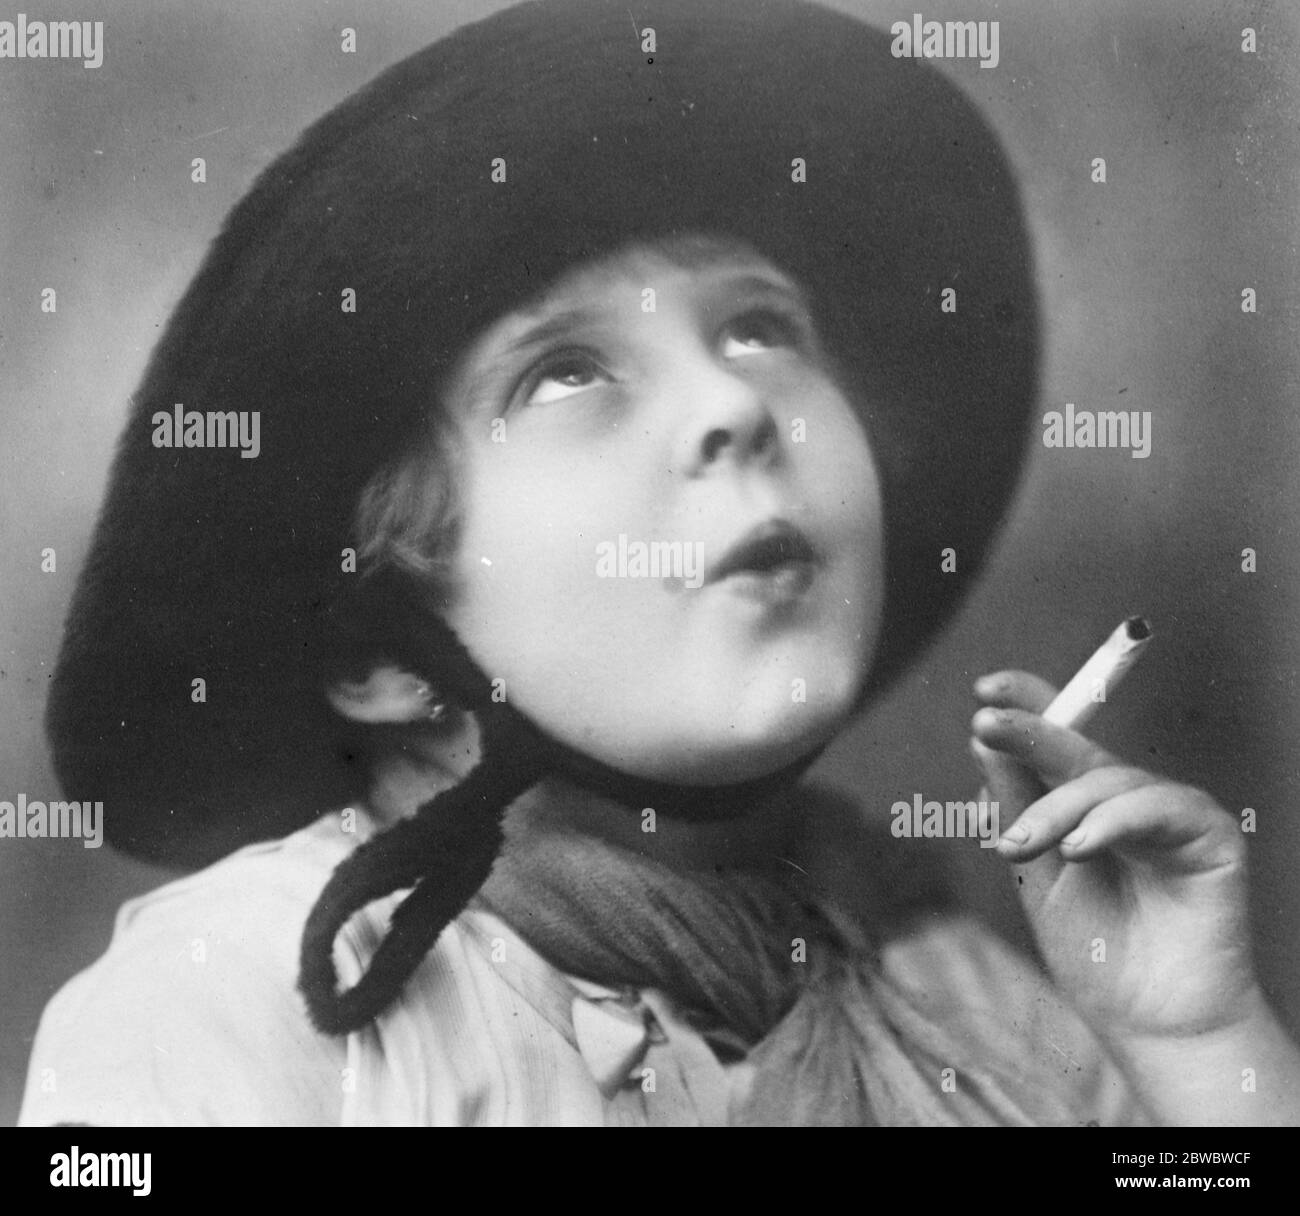 Le dernier film de France trouver . Little Alex Platonoff , fils de quatre ans d'un réfugié russe résidant à Paris . Il a été engagé à 200 livres par mois par l'un des principaux producteurs français . 8 décembre 1926 Banque D'Images